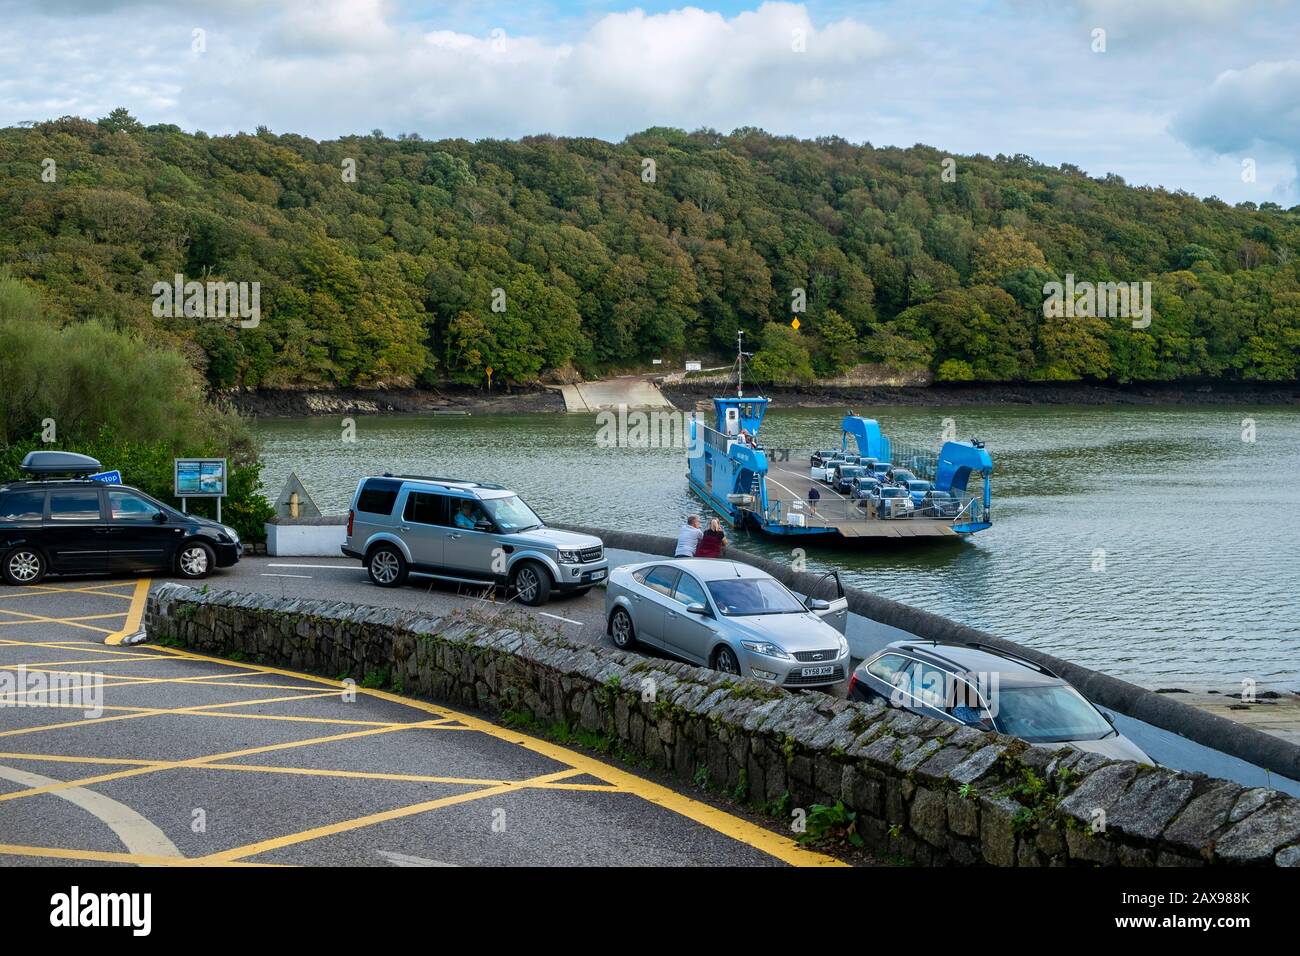 Oktober 2018 - Trelissick, Cornwall, Großbritannien: Die Warteschlange für Autos für die Ankunft der King Harry Ferry. Eine Fahrzeugkettenfähre, die die Carrick Roads überquert, erreicht die Flussmünde des Flusses Fal in Cornwall, England, Großbritannien Stockfoto